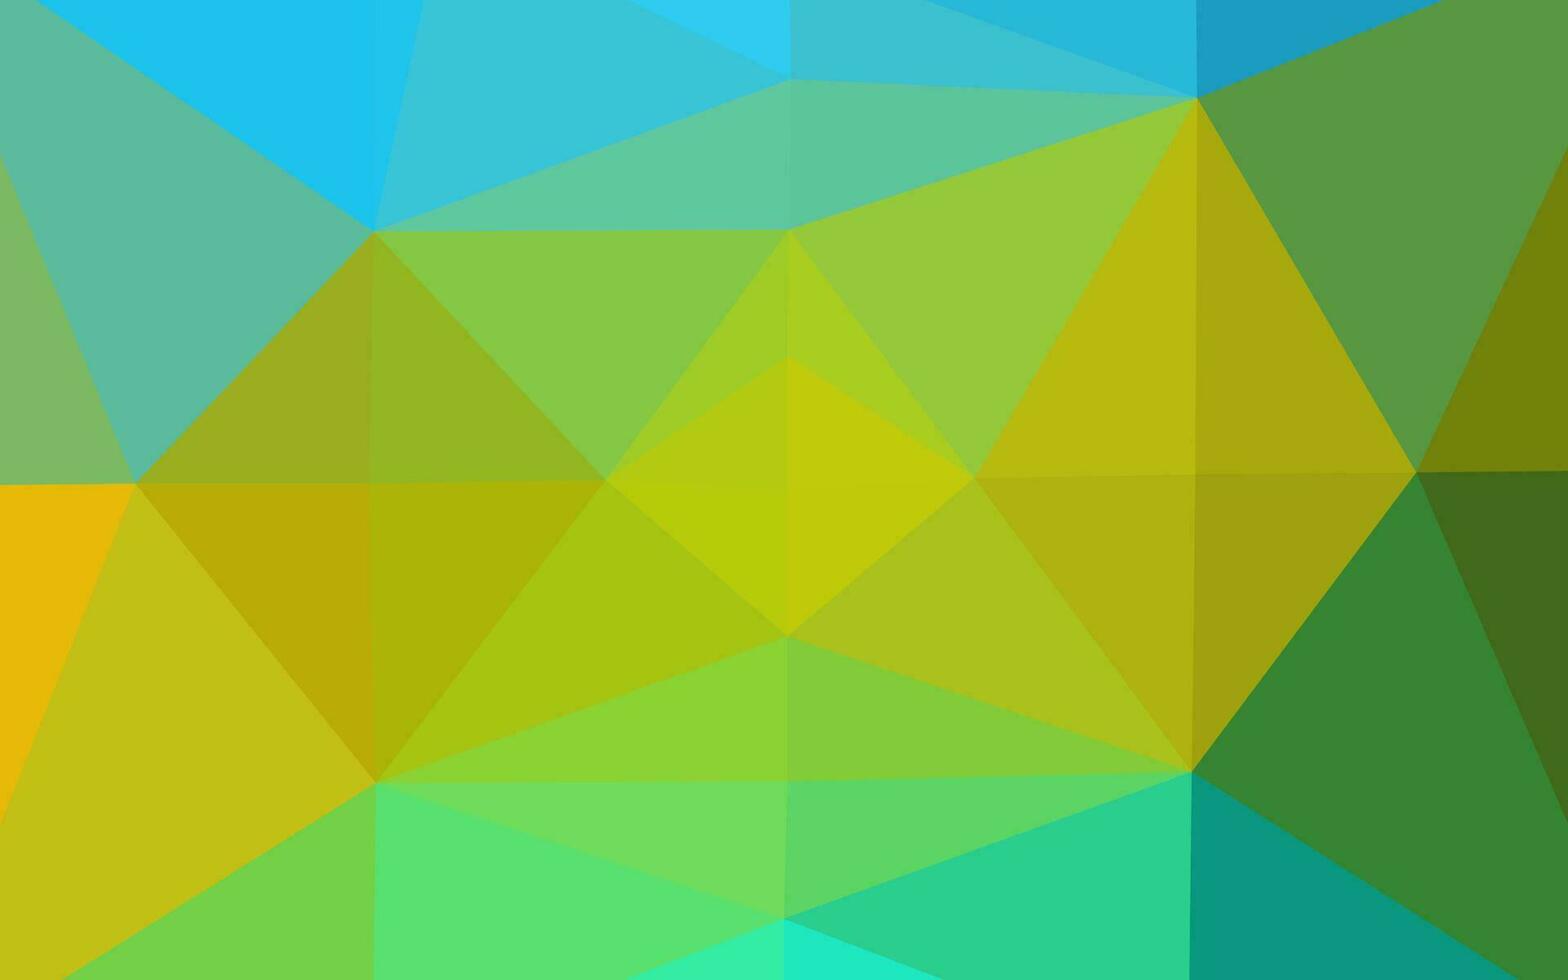 ljusblå, gul vektor polygon abstrakt bakgrund.